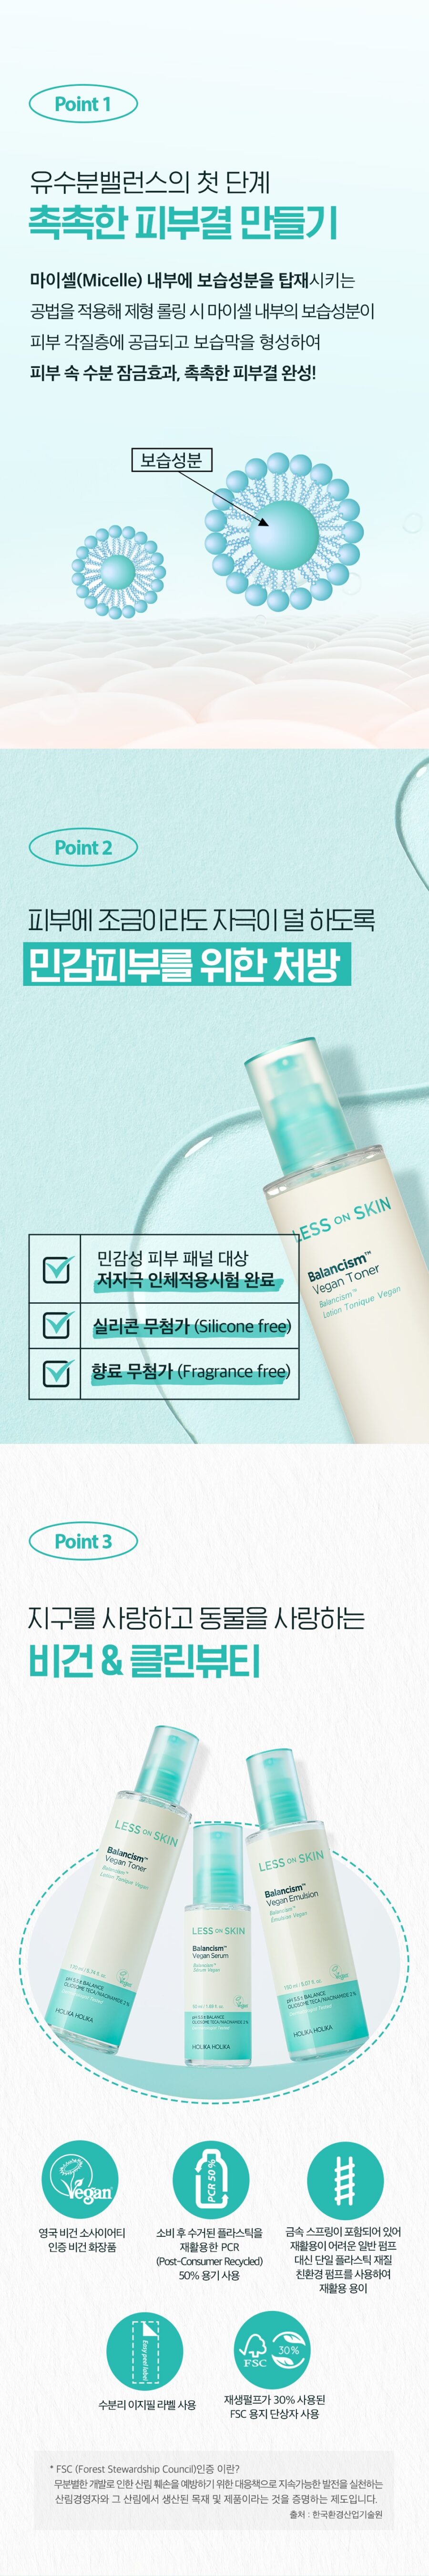 Holika Holika Less On Skin Balancism Vegan Toner korean skincare product online shop malaysia china india4